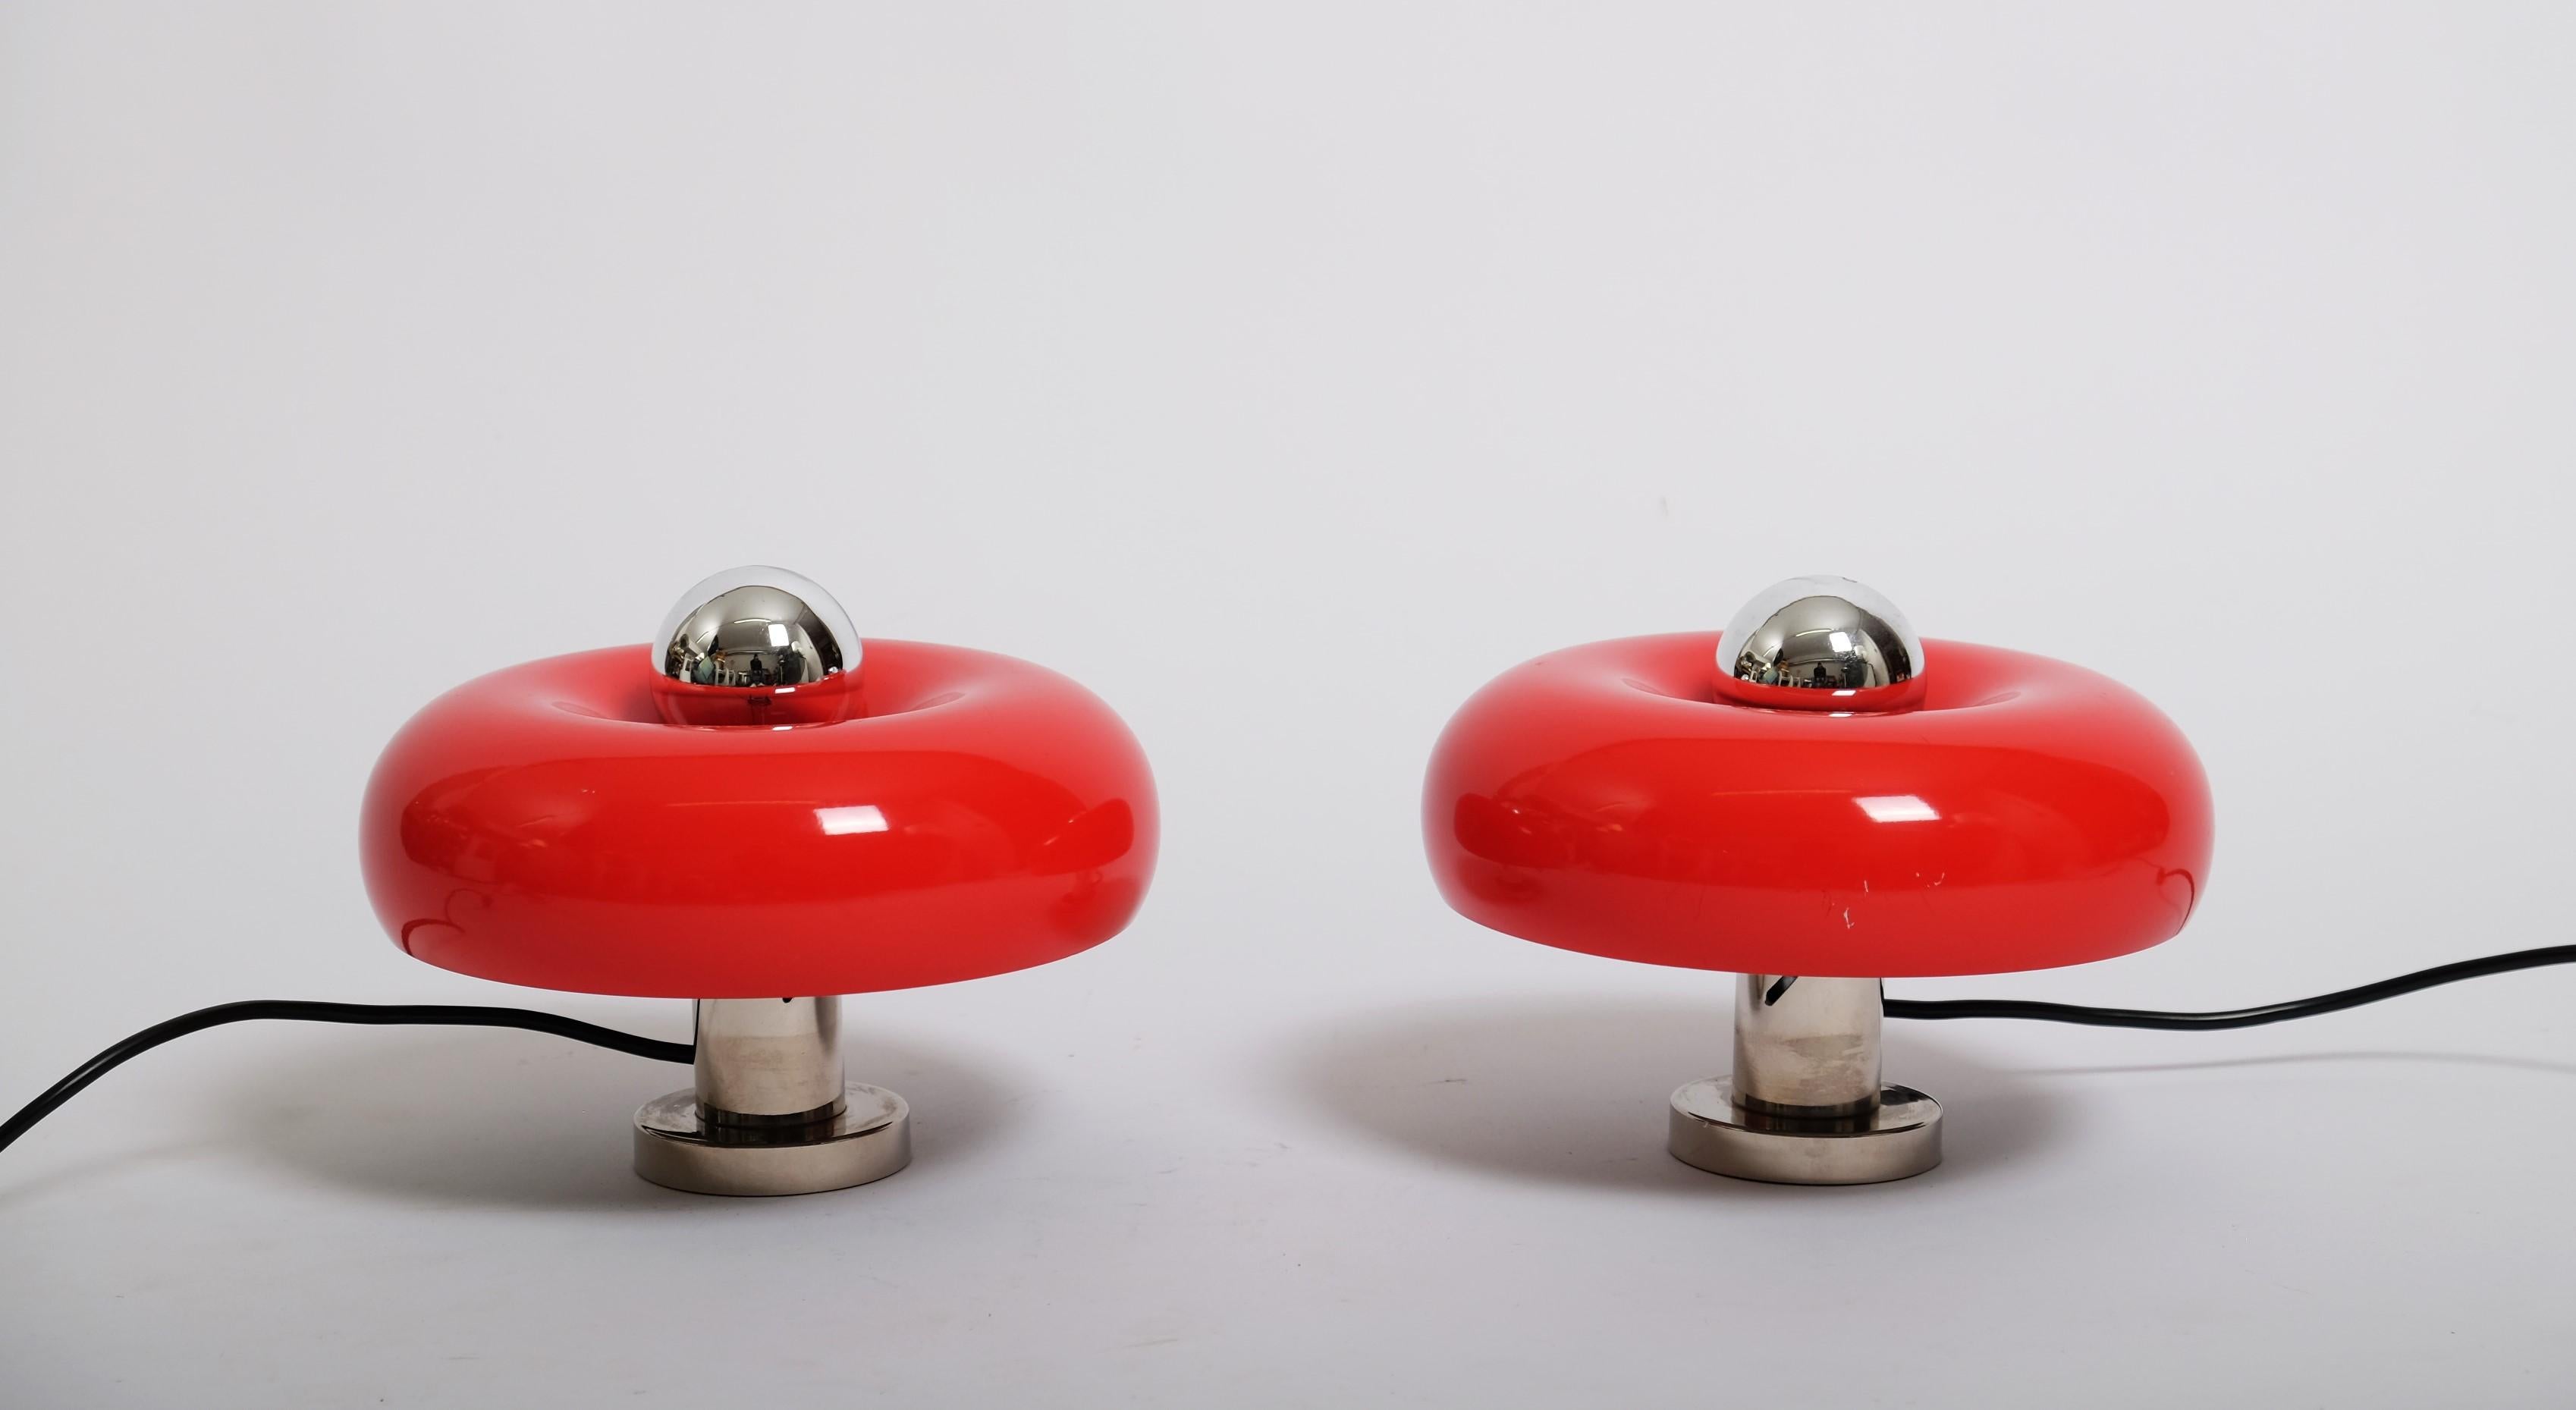 Sehr schönes Paar Wandleuchten oder Tischlampen entworfen von Ingo Maurer, Deutschland 1960er Jahre. Diese Lampen haben die Form eines Donuts und der rot lackierte Schirm kann in der Höhe verstellt werden. Die Lampen lassen sich leicht an die Wand